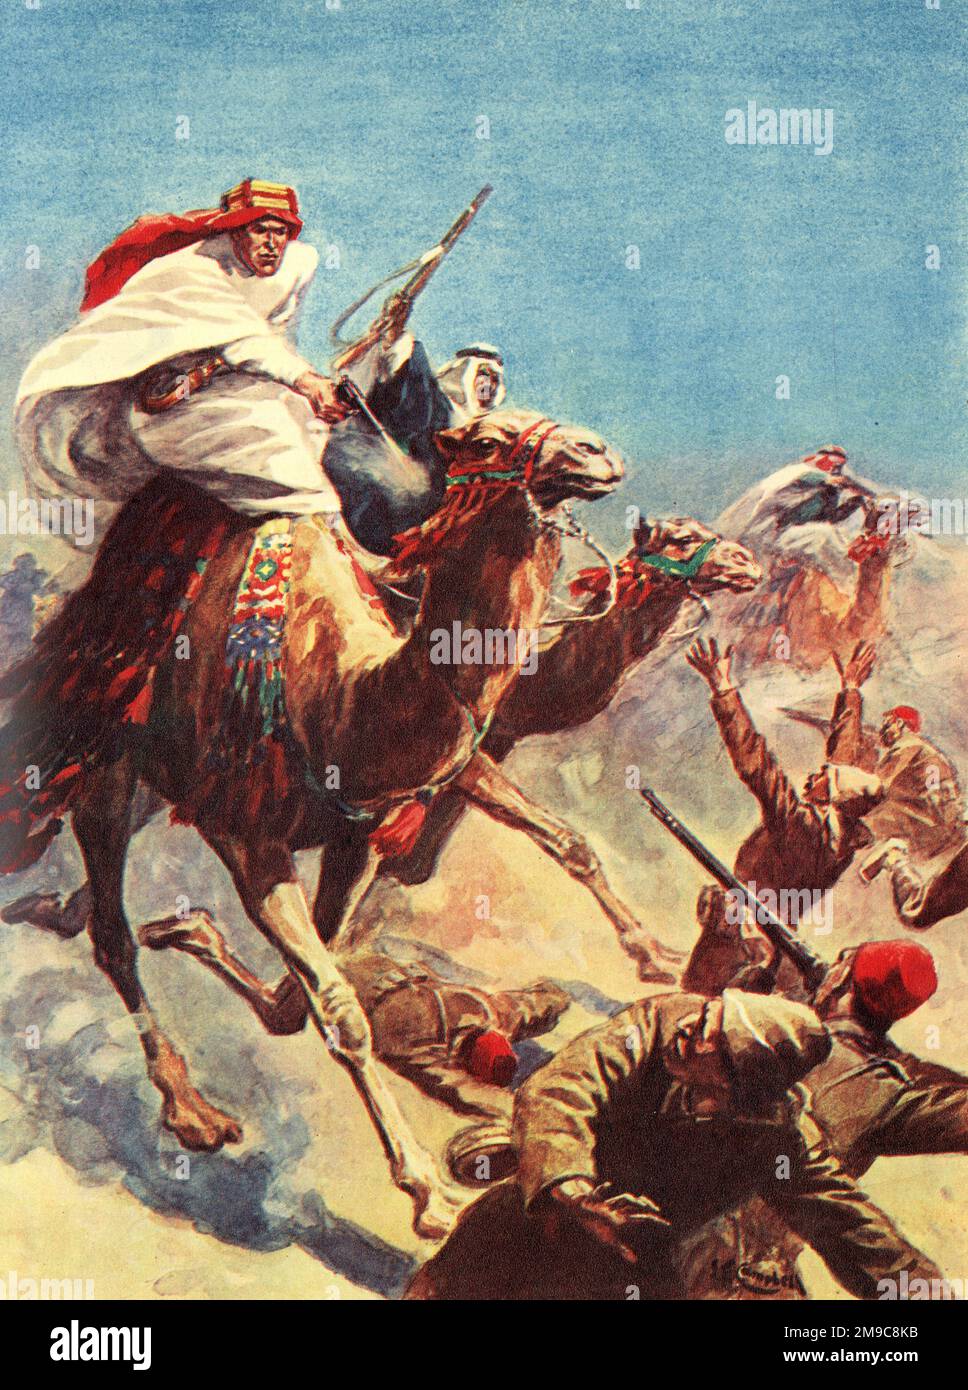 T e Lawrence d'Arabia in azione durante la prima guerra mondiale - combatté nella rivolta araba (1916-1918) e nella Campagna del Sinai e della Palestina (1915-1918). Foto Stock